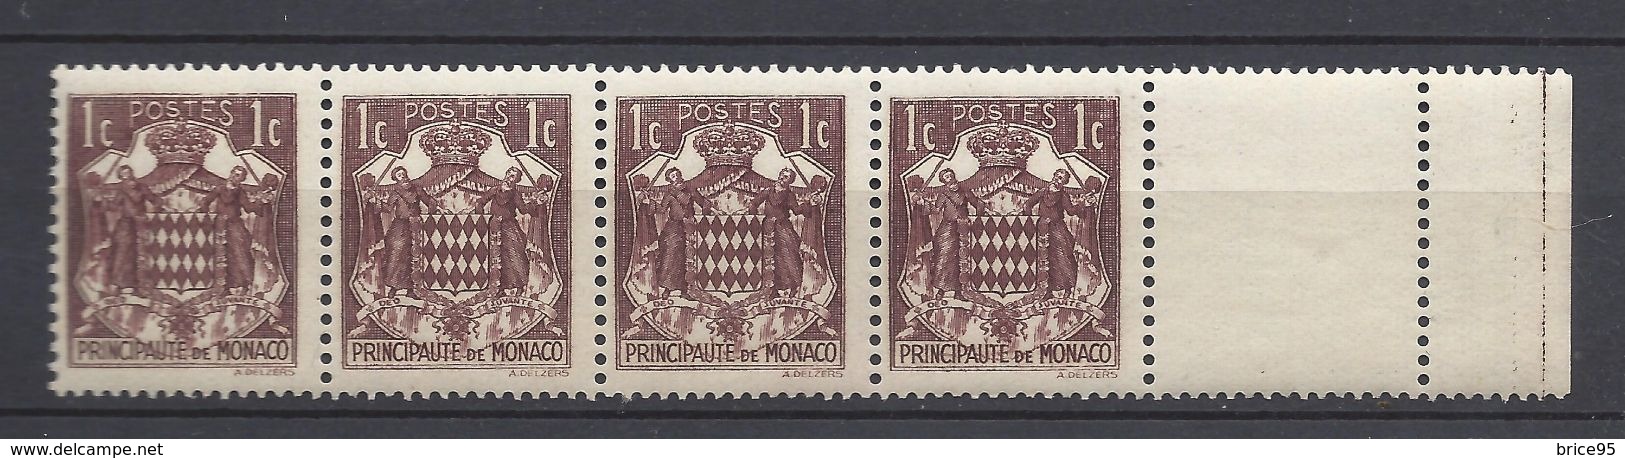 Monaco - YT N° 154 - Neuf Sans Charnière, Petite Trace De Charnière Sur Le Bord De Feuille - 1937 à 1939 - Unused Stamps